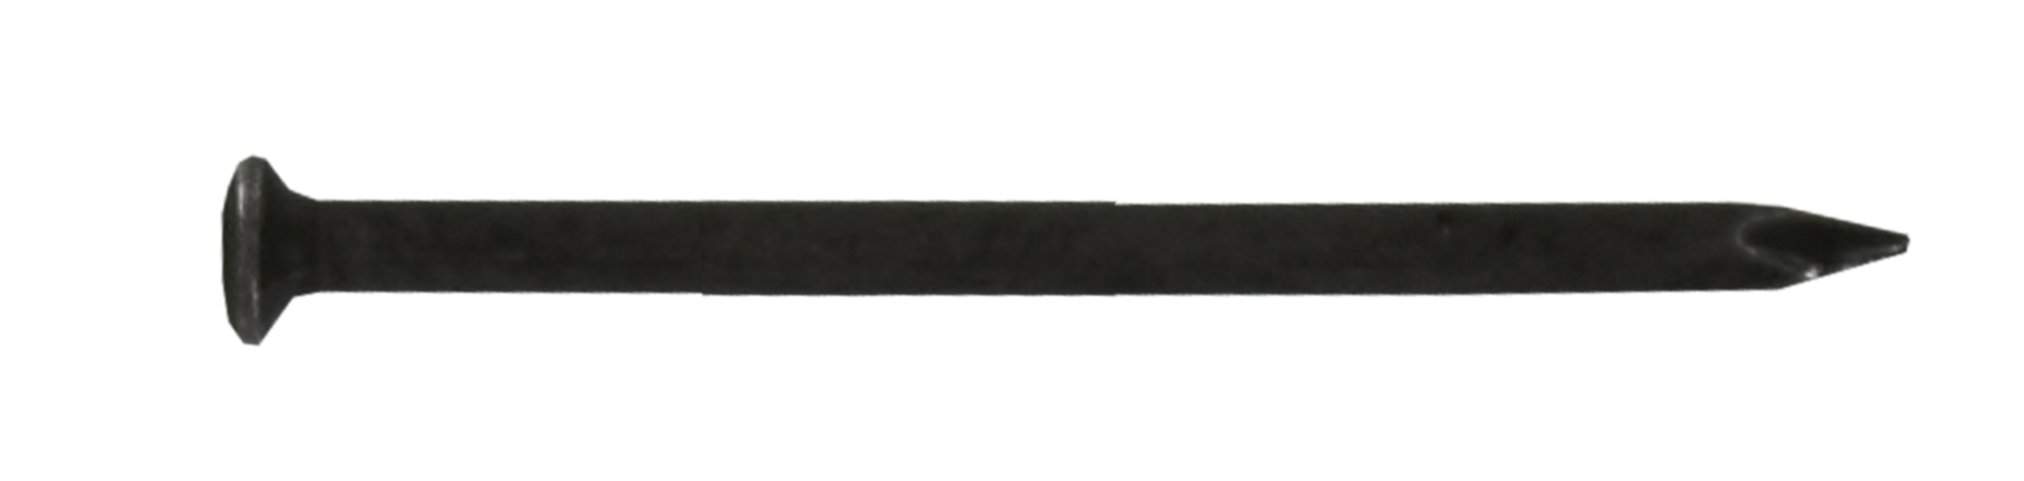 Pointe à tête ronde acier trempé 2x30mm, sachet de 80 grammes.